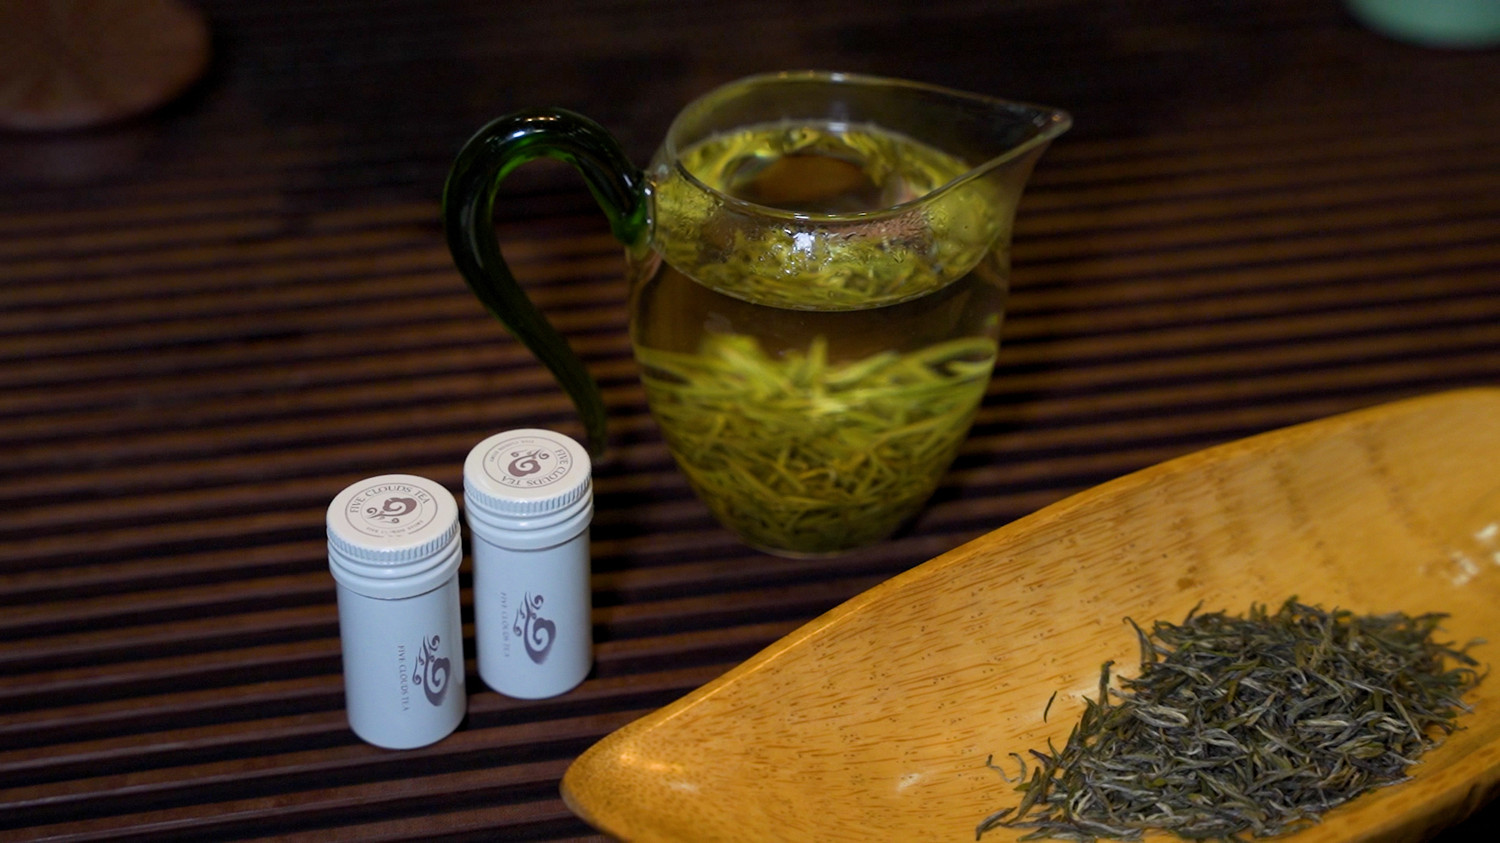 Chinese Maojian green tea gift 101 Five Clouds premium Xinyang Maojian green tea